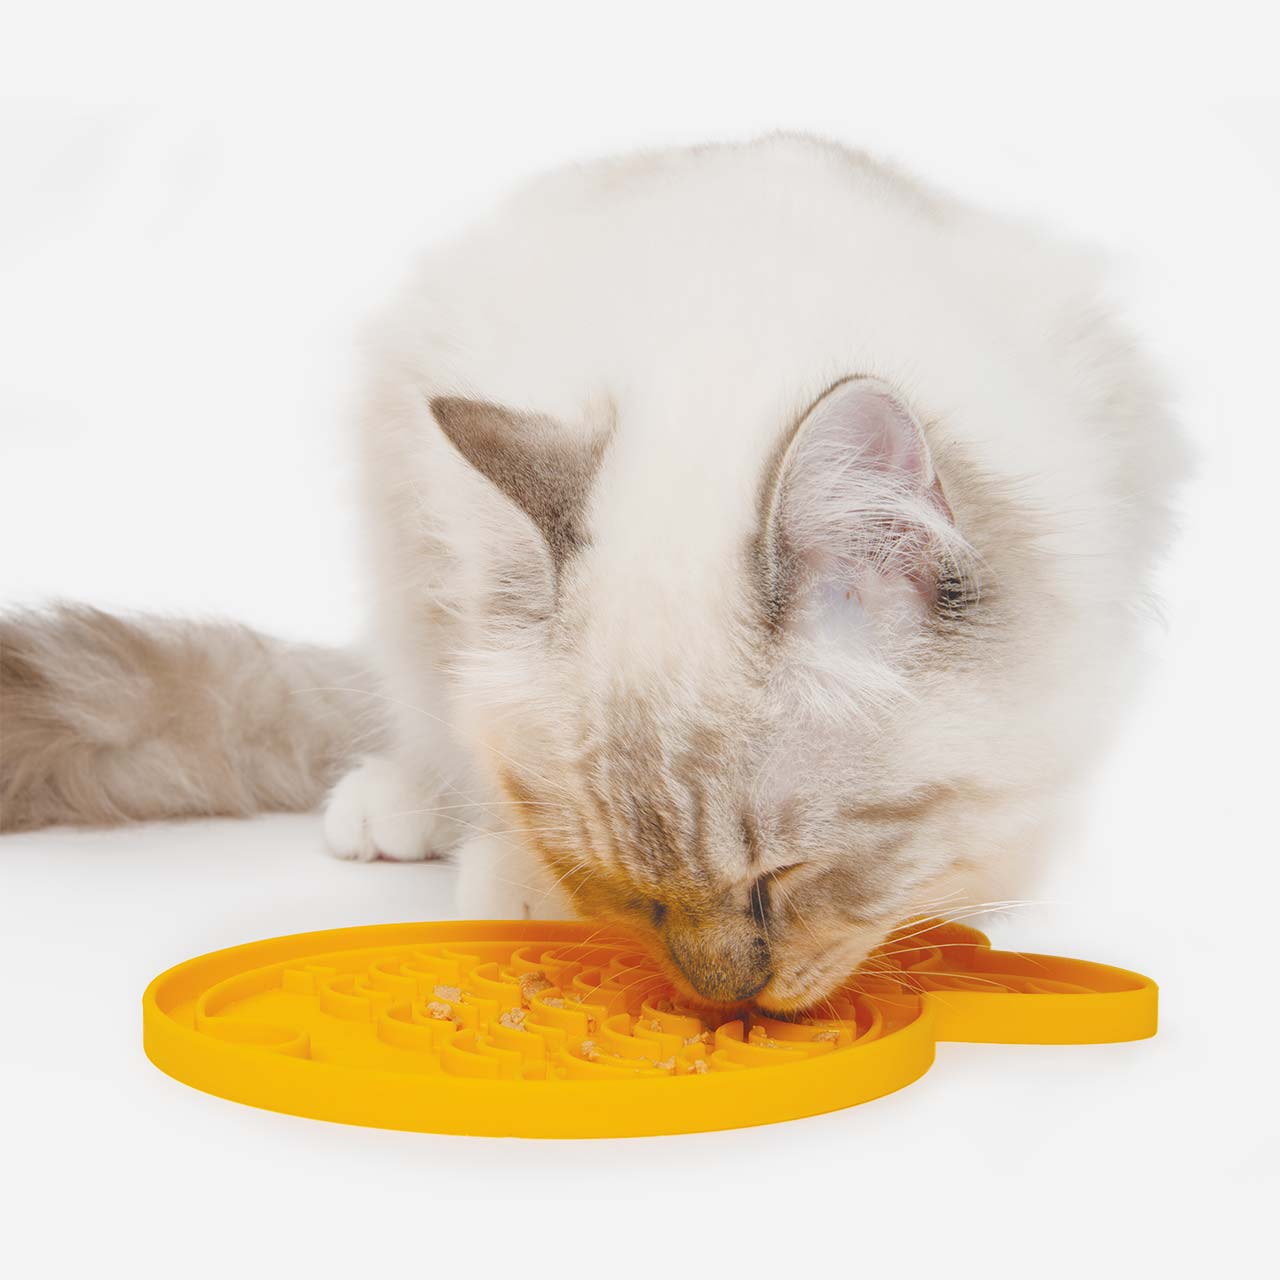 Eine Katze schleckt Creamy von der Creamy Futtermatte auf